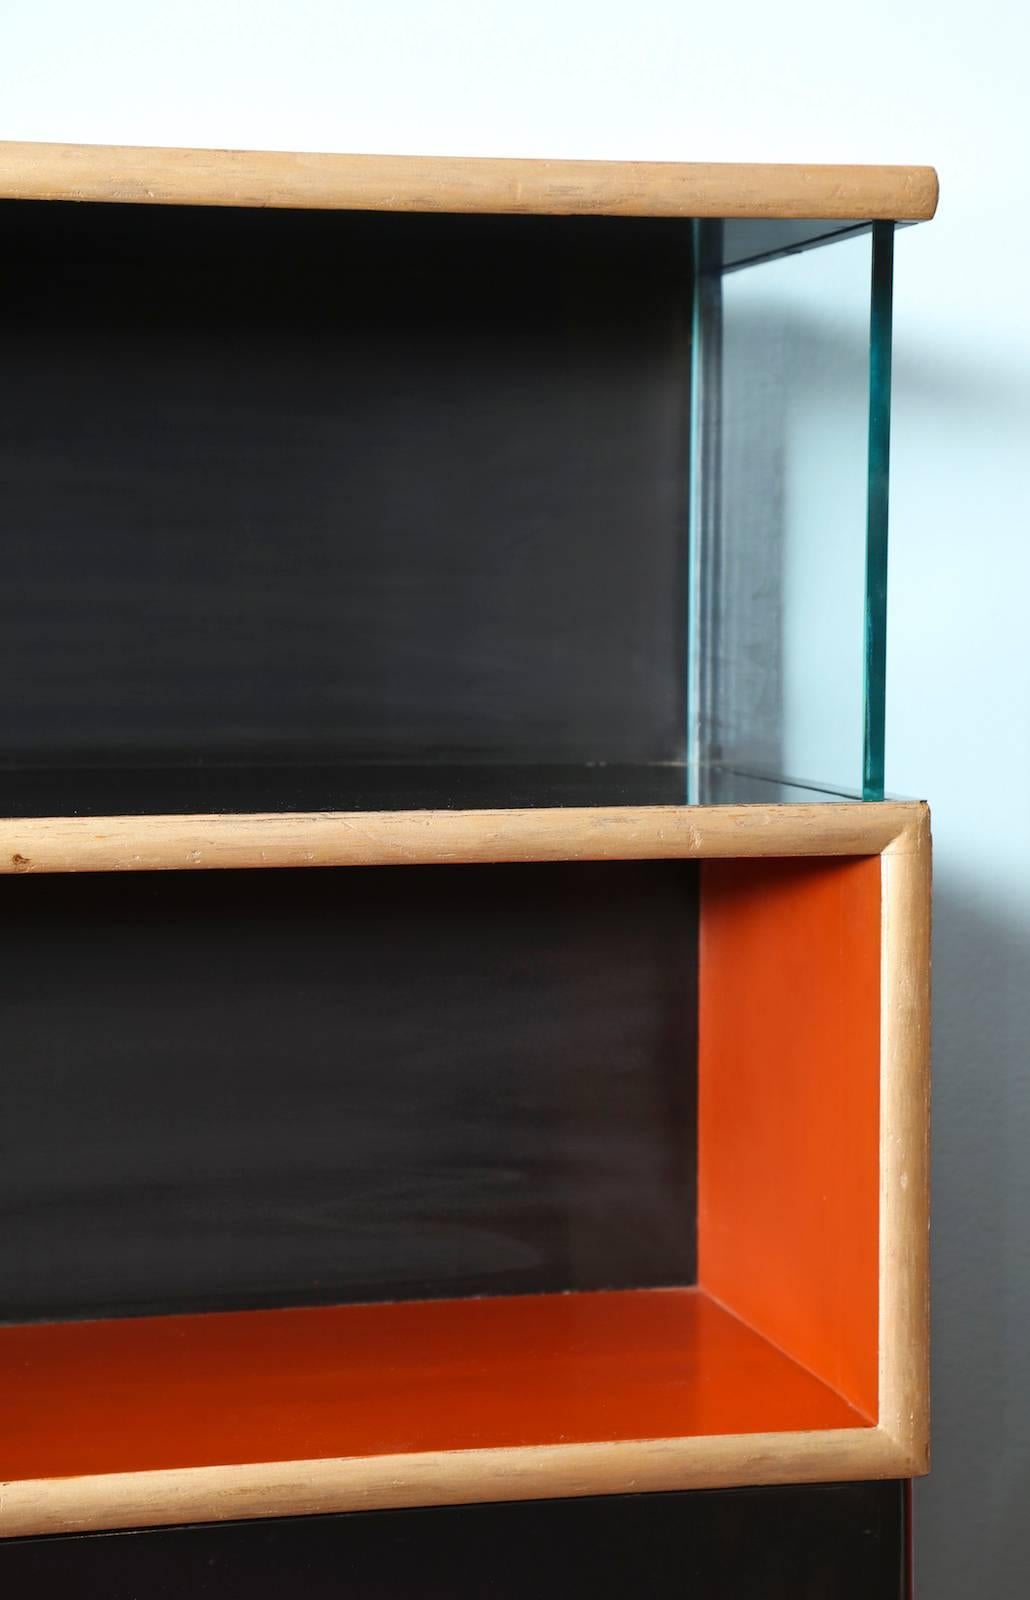 Rare bibliothèque/armoire de rangement sur mesure conçue par Paul Frankl. Bois laqué orange et noir, avec face peinte en or dans un motif géométrique serpentant et panneaux latéraux en verre épais. Un rare exemple de l'Art déco américain qui